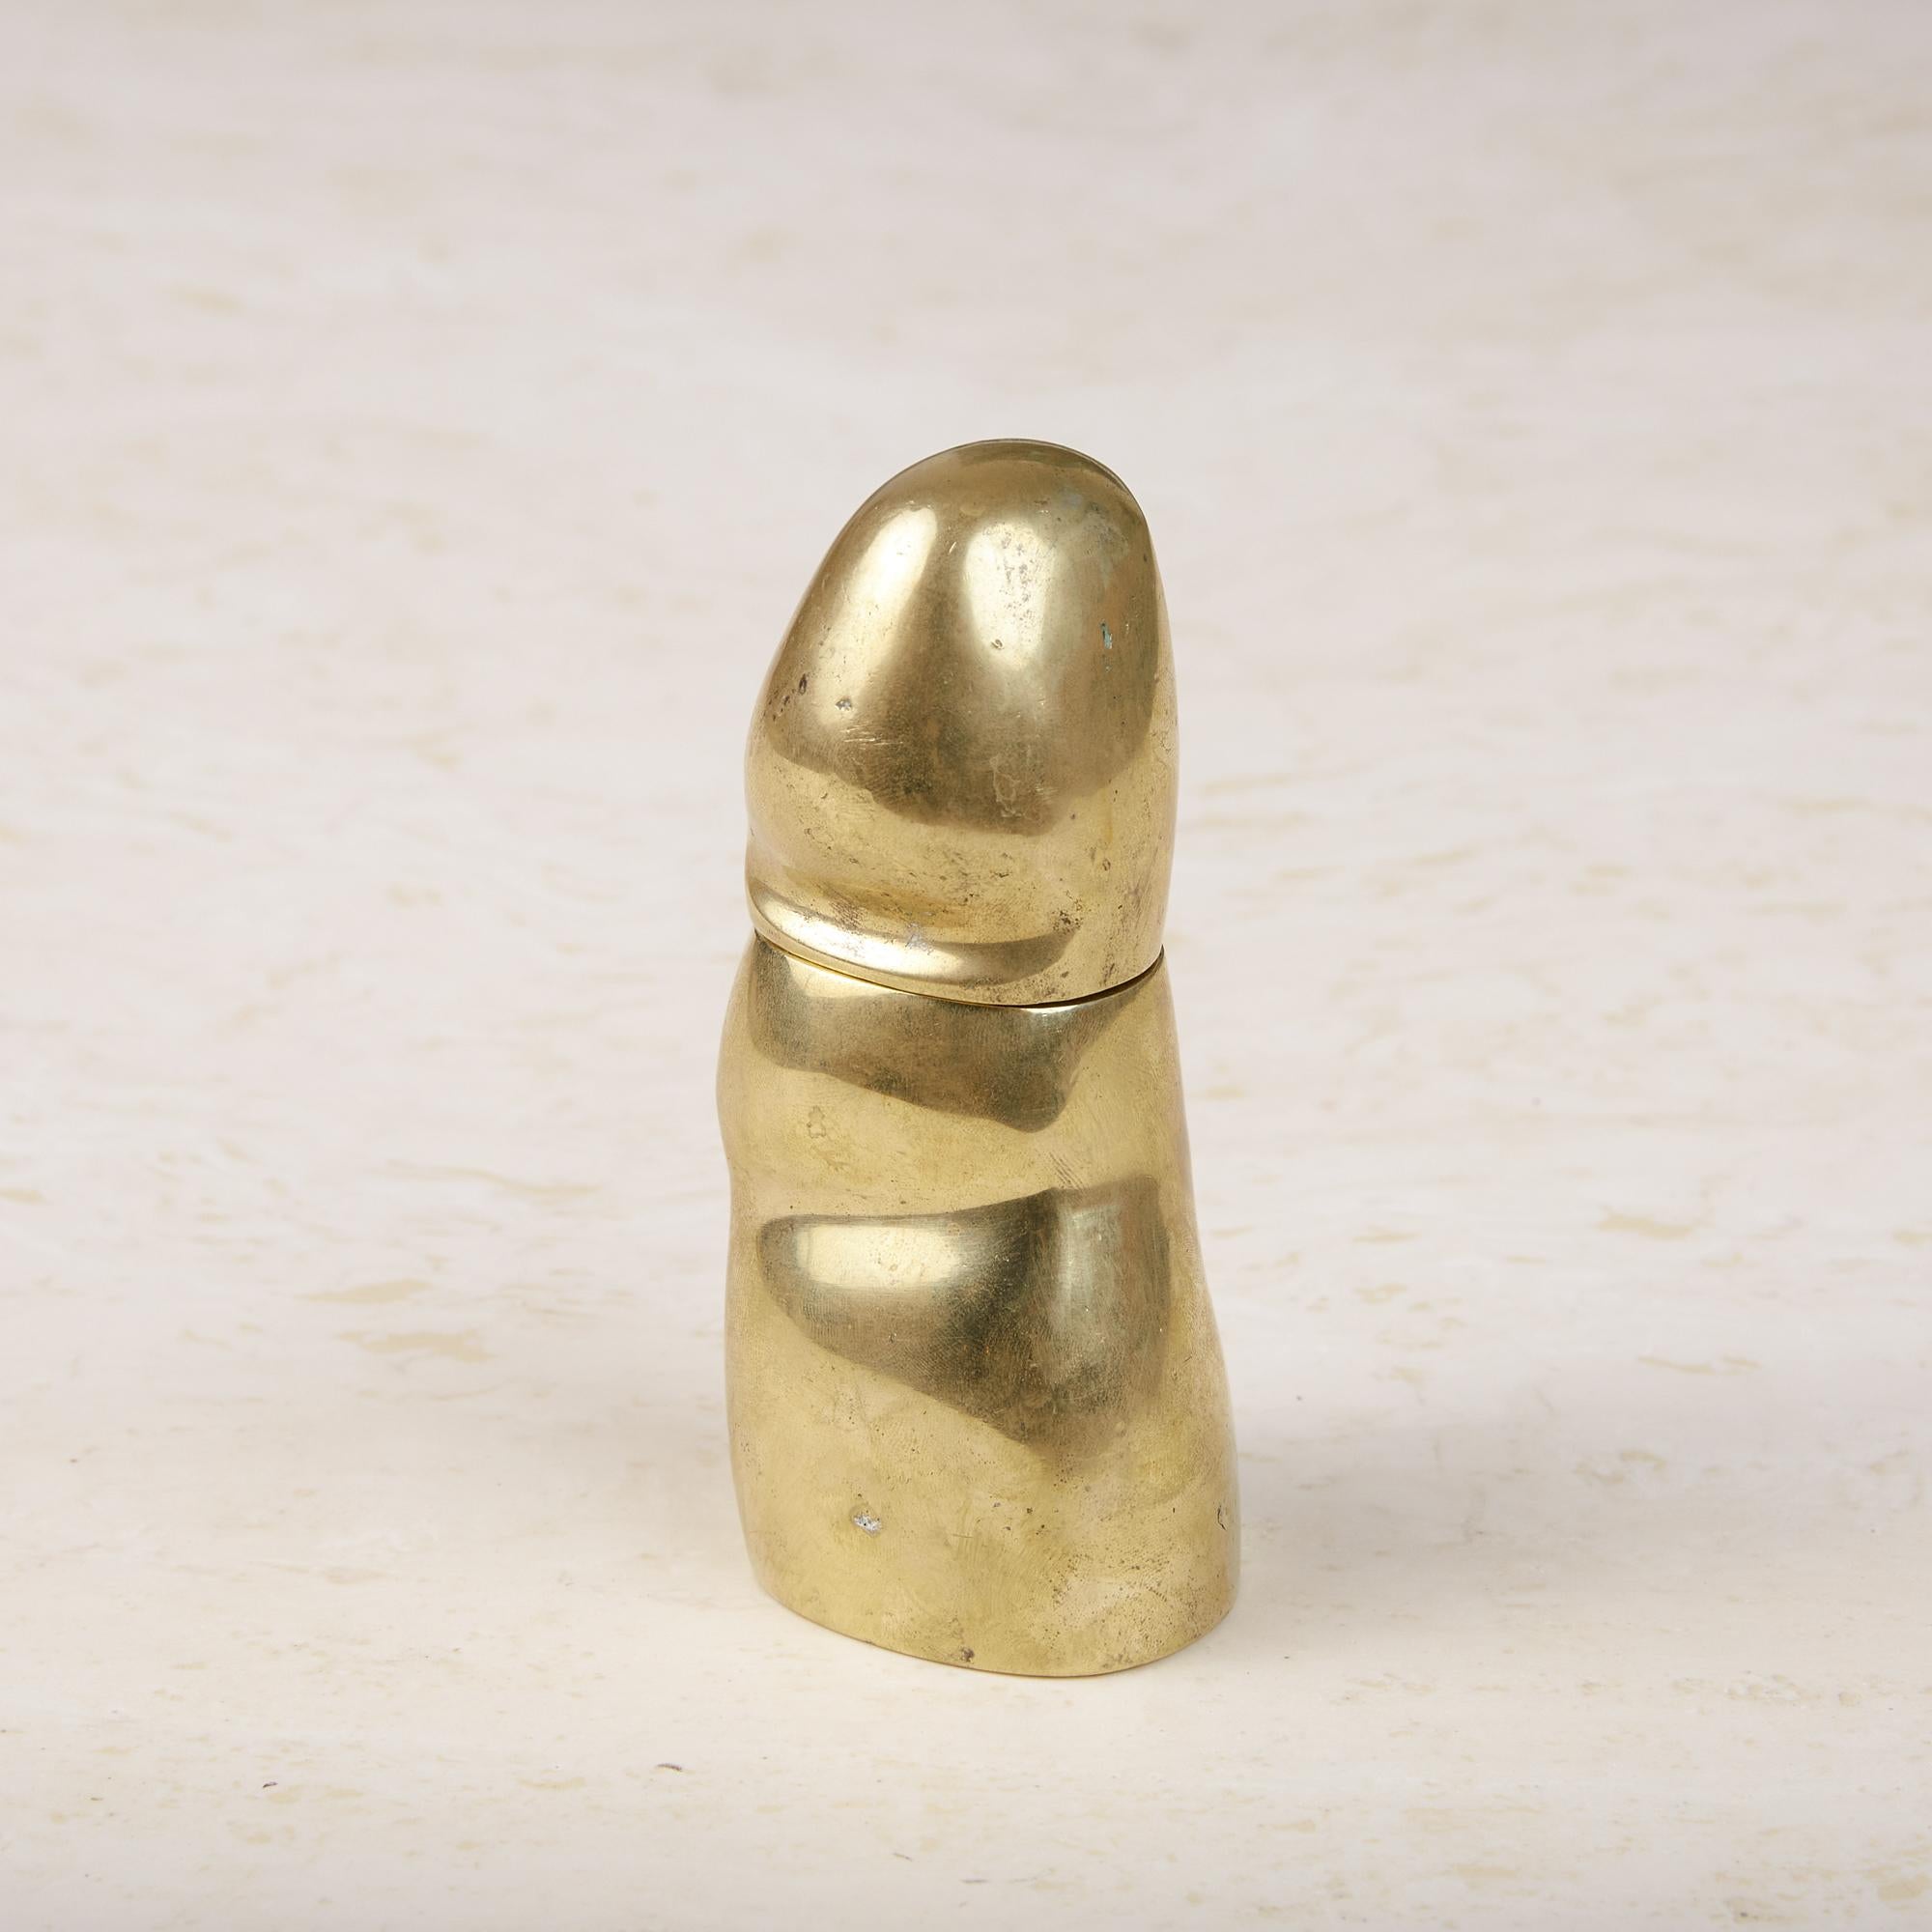 Pietrina Checcacci Cast Bronze Finger Corkscrew 1